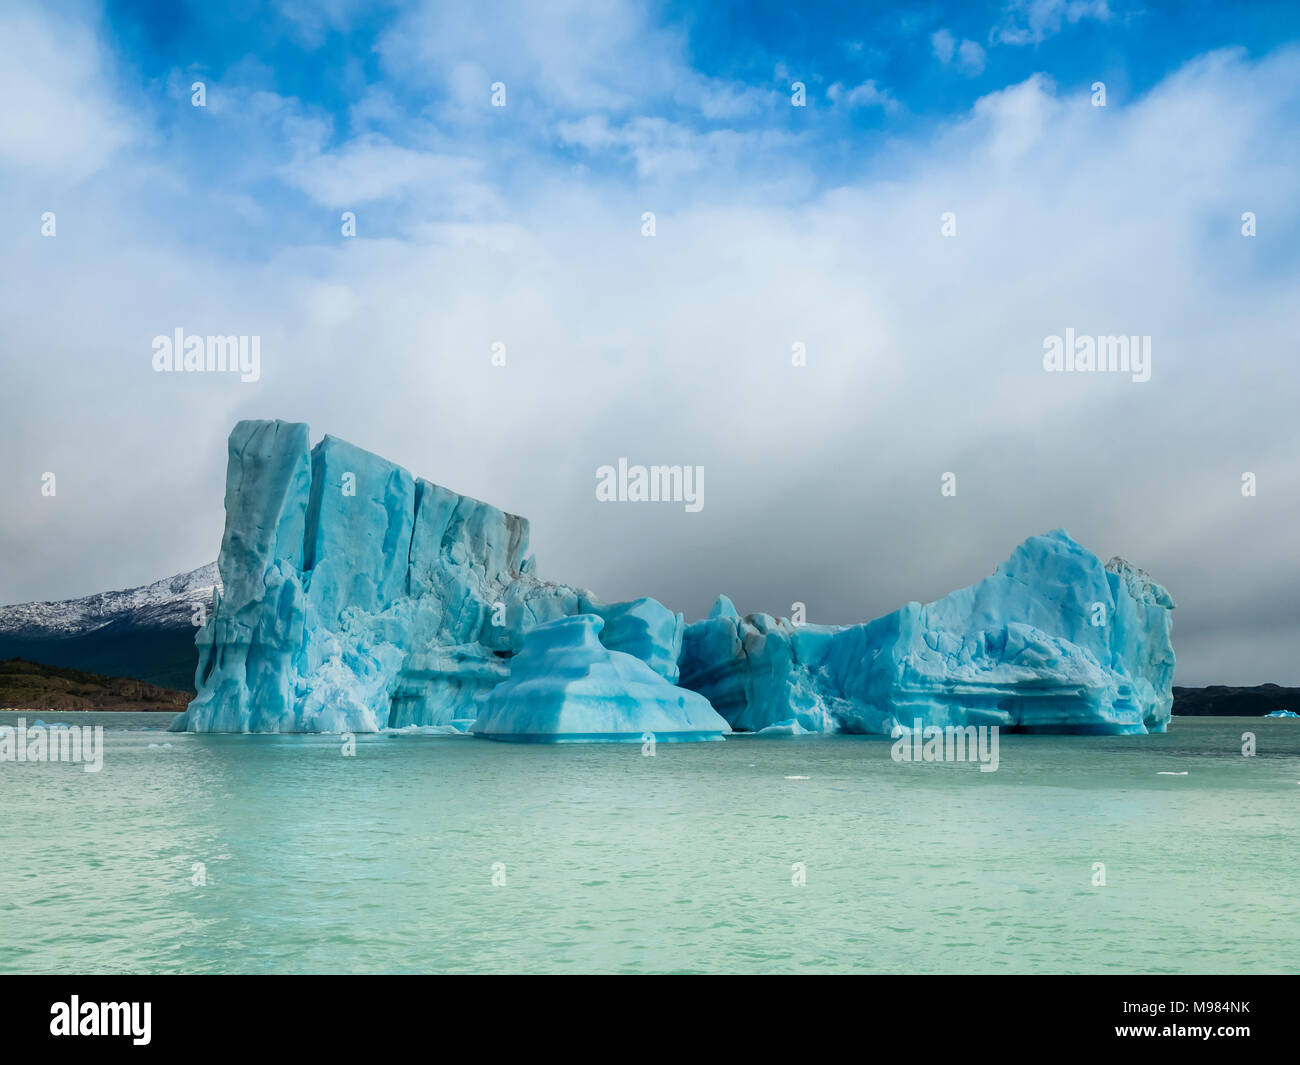 Argentina, Patagonia, El Calafate, Puerto Bandera, Lago Argentino, Parque Nacional Los Glaciares, Estancia Cristina, broken iceberg Stock Photo